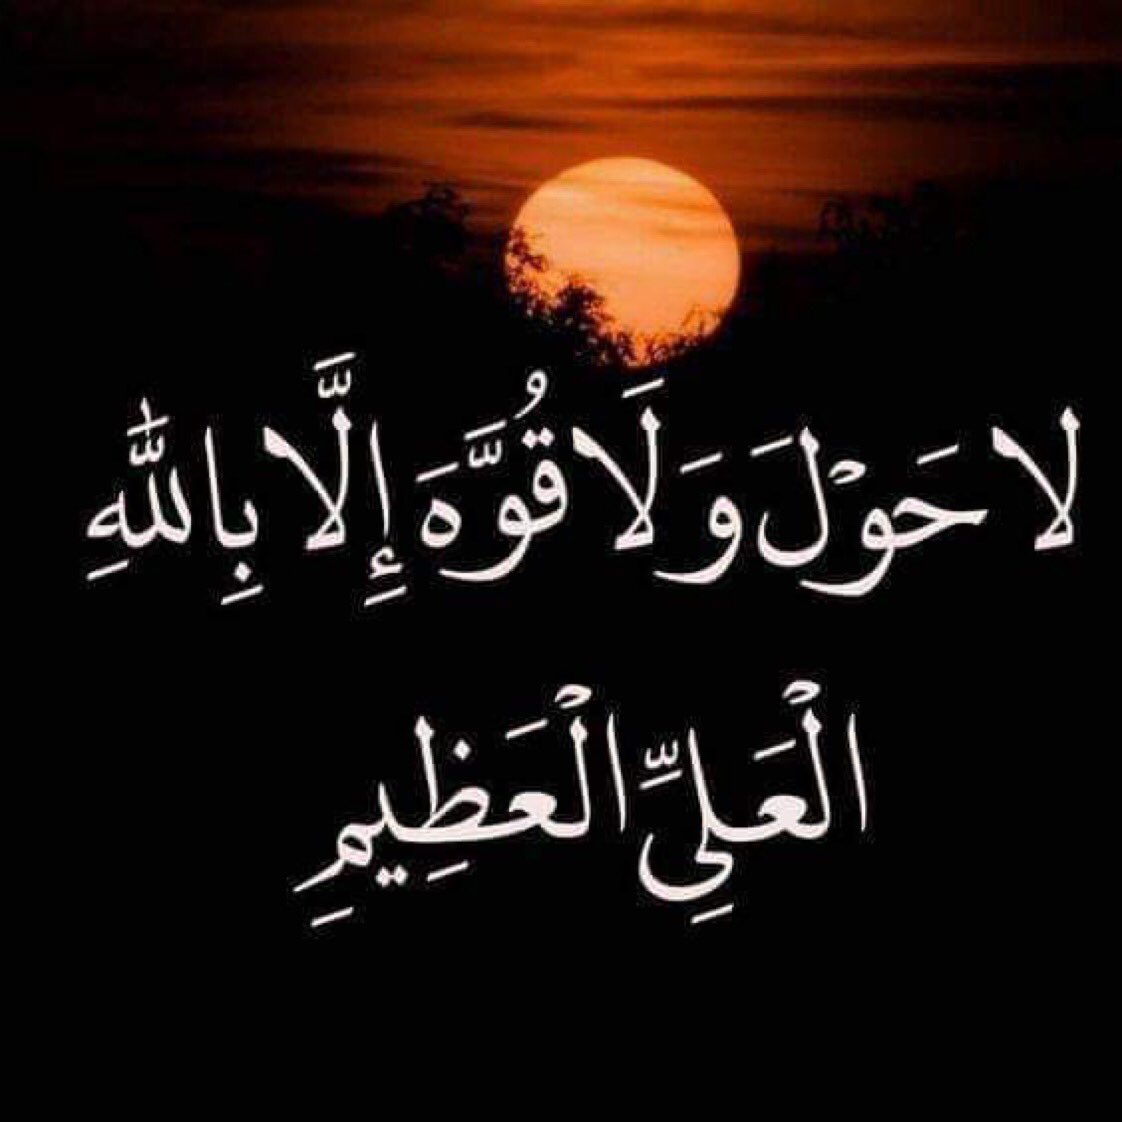 Ля хавля перевод. Ля хавля ва ля куввата илля. Дуа нет силы и мощи кроме Аллаха. Нет силы и мощи кроме Аллаха на арабском.